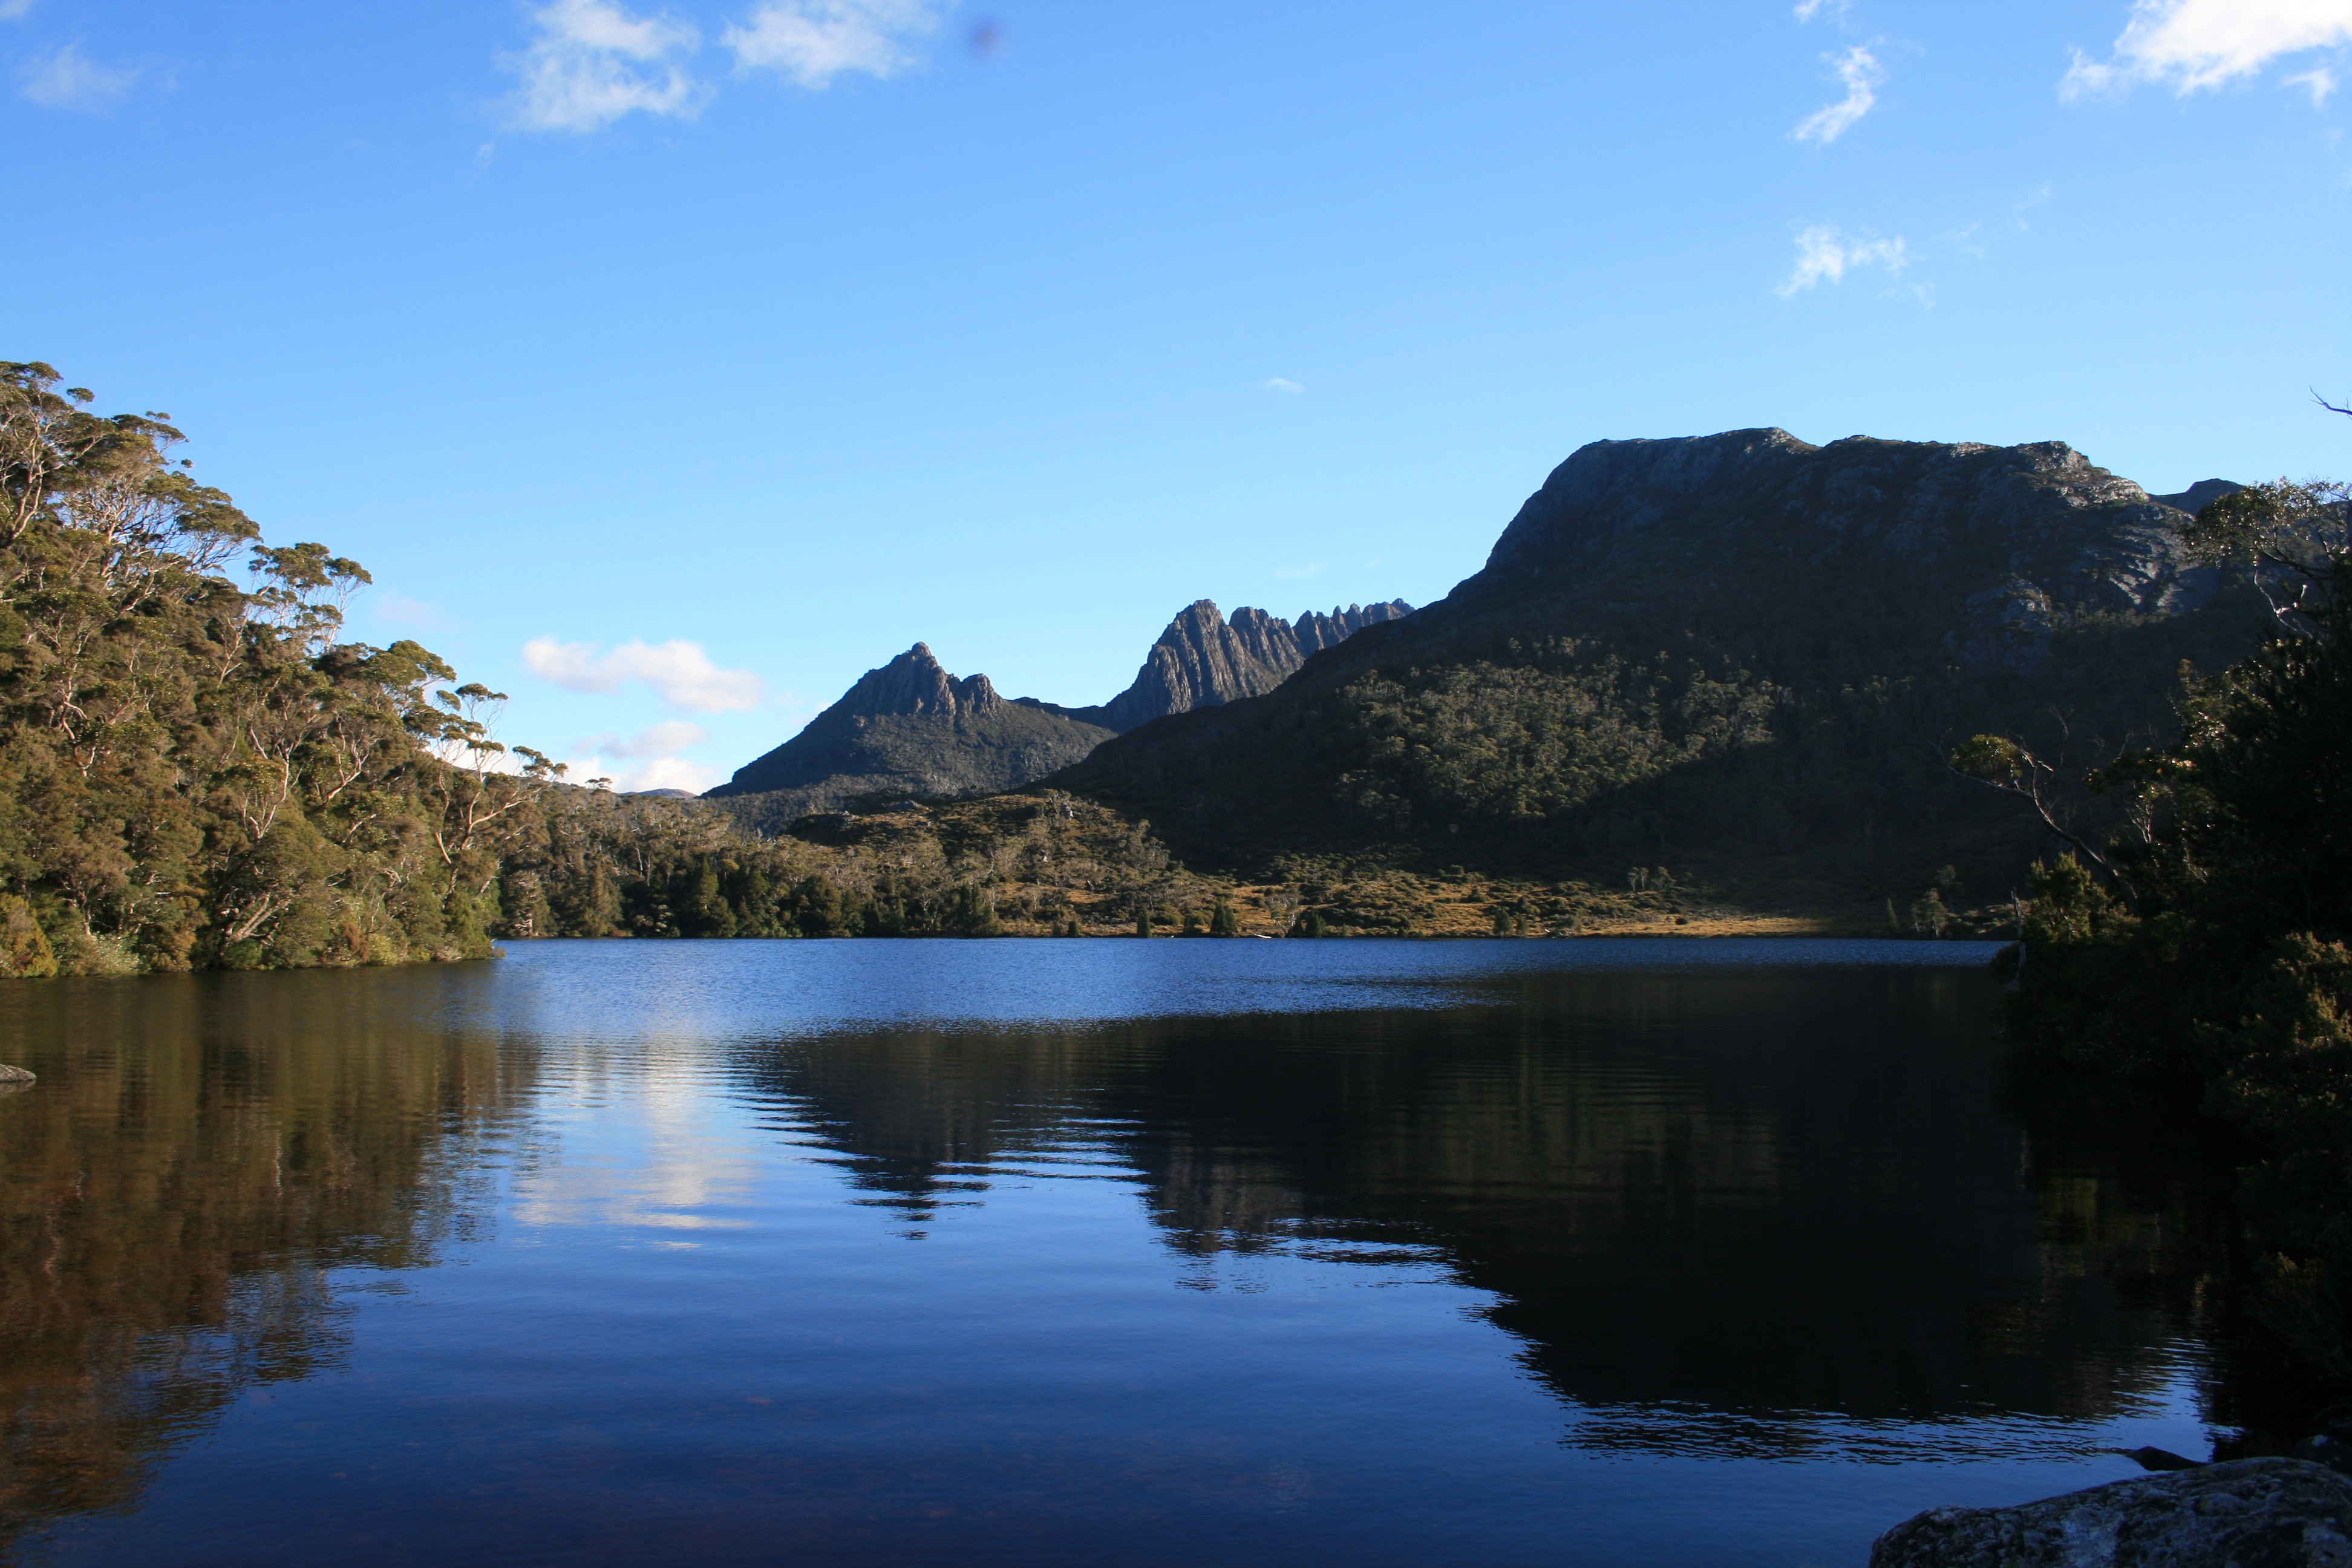 Tasmania Australia - National Park Cradle Mountain